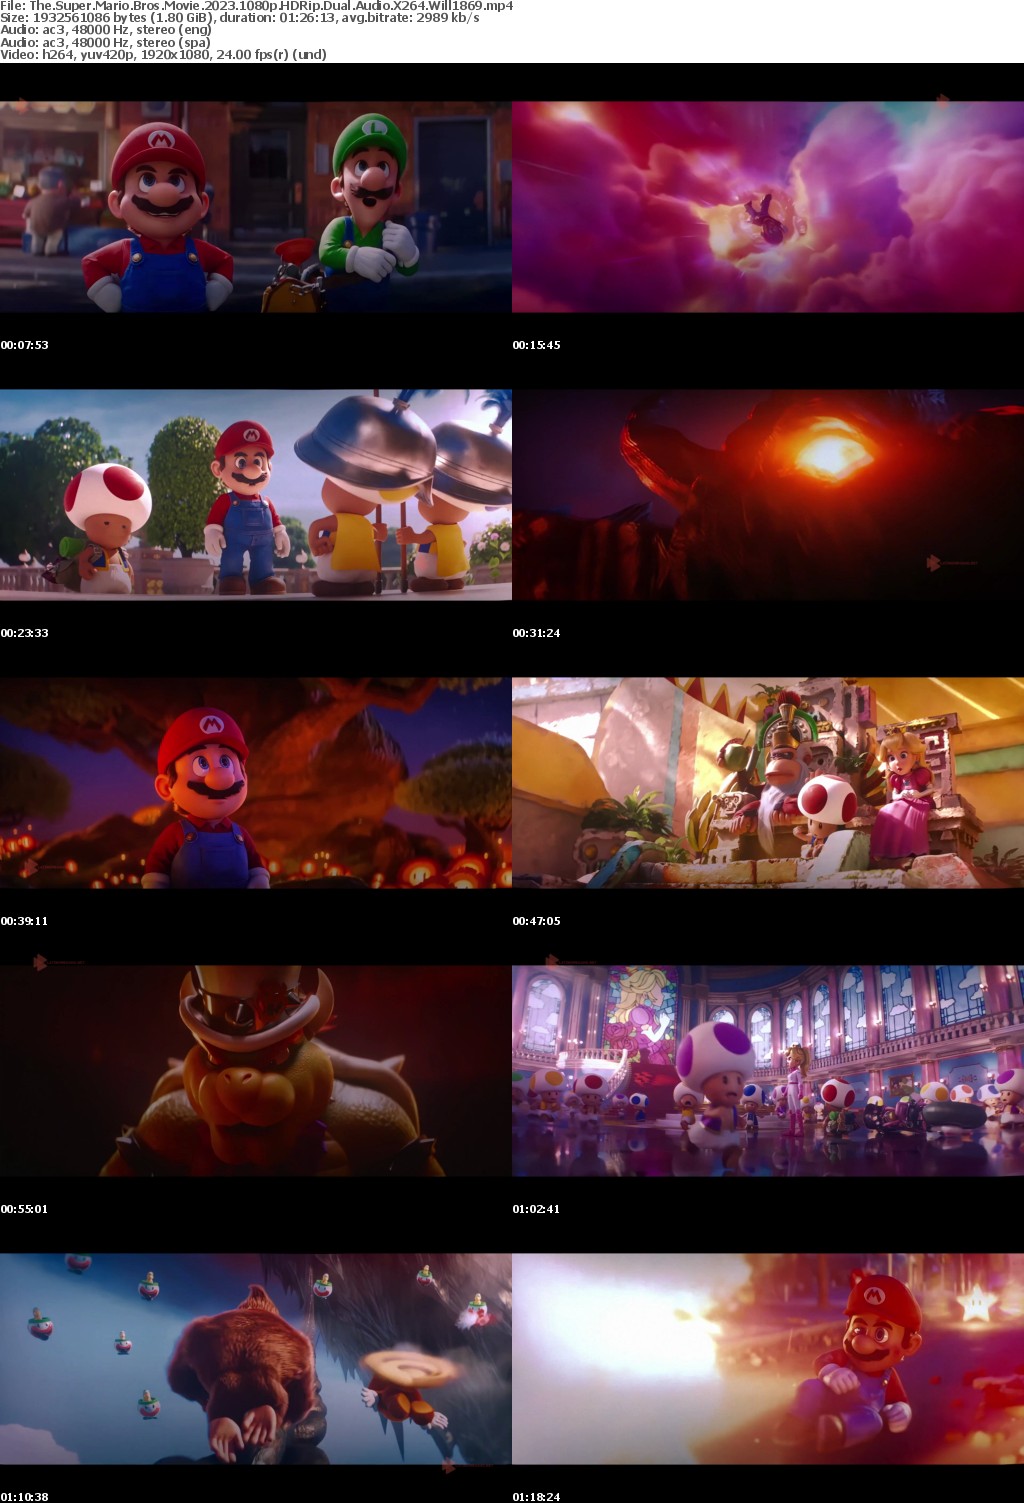 The Super Mario Bros Movie 2023 1080p HDRip Dual Audio X264 Will1869